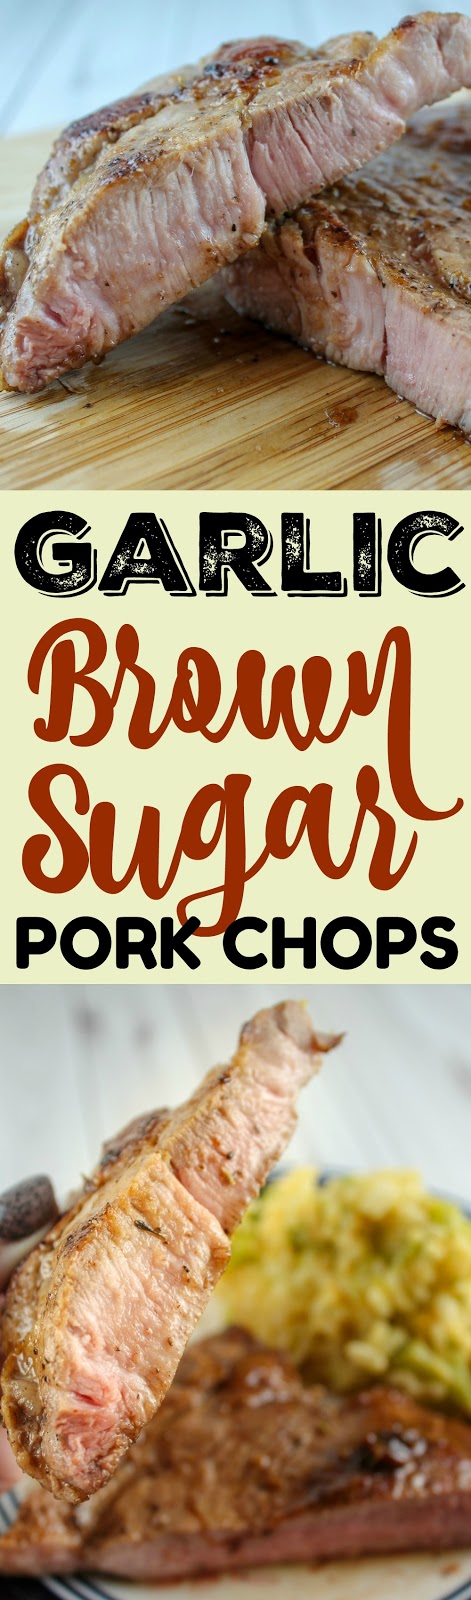 Recipe: Garlic Brown Sugar Pork Chops - The Food Hussy